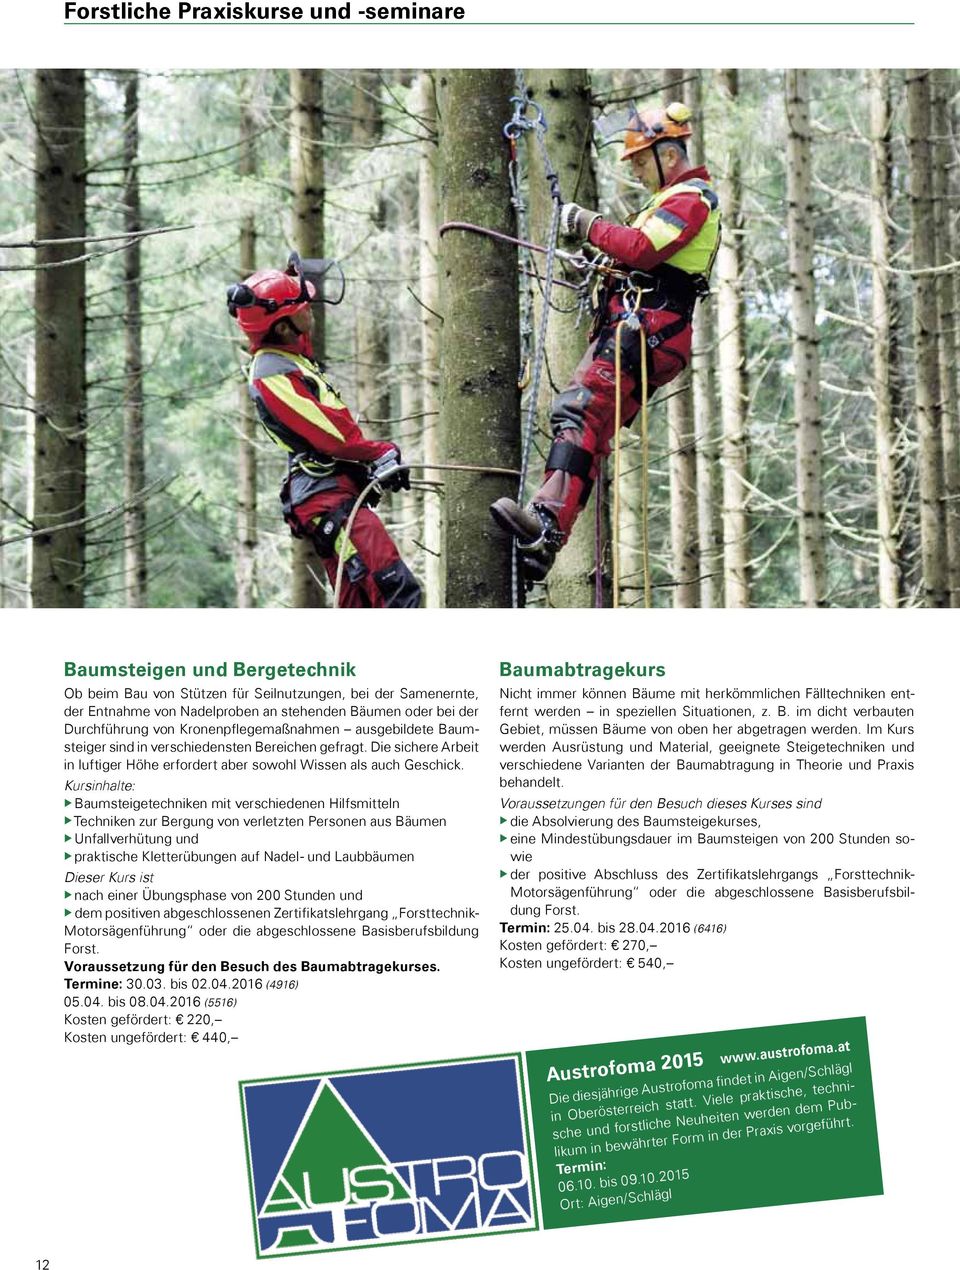 Kursinhalte: ubaumsteigetechniken mit verschiedenen Hilfsmitteln utechniken zur Bergung von verletzten Personen aus Bäumen uunfallverhütung und upraktische Kletterübungen auf Nadel- und Laubbäumen